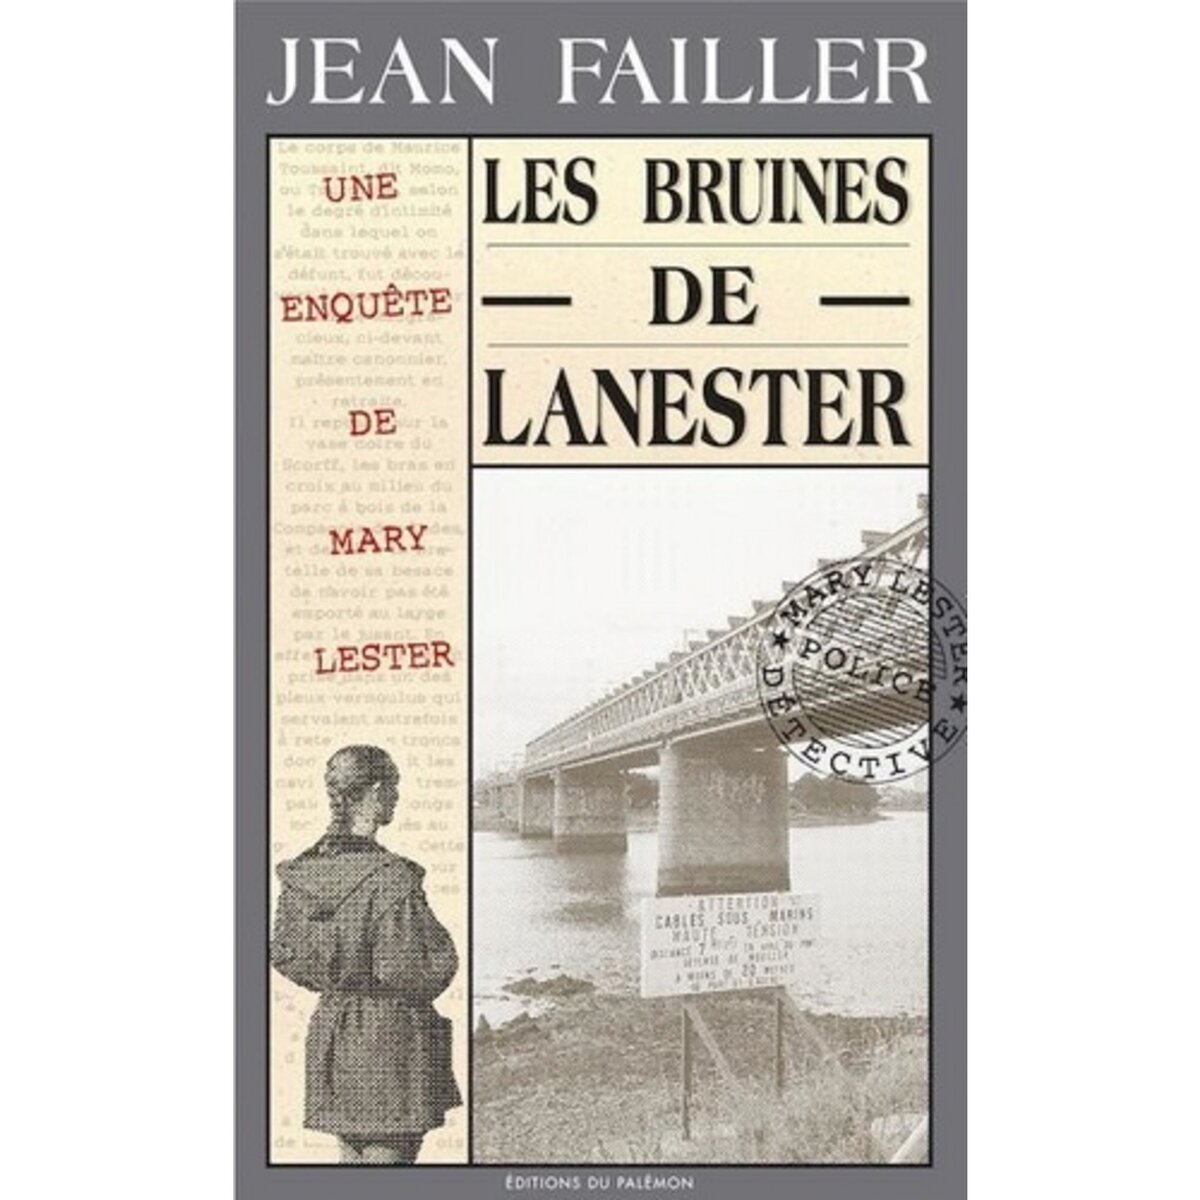  LES ENQUETES DE MARY LESTER TOME 1 : LES BRUINES DE LANESTER, Failler Jean